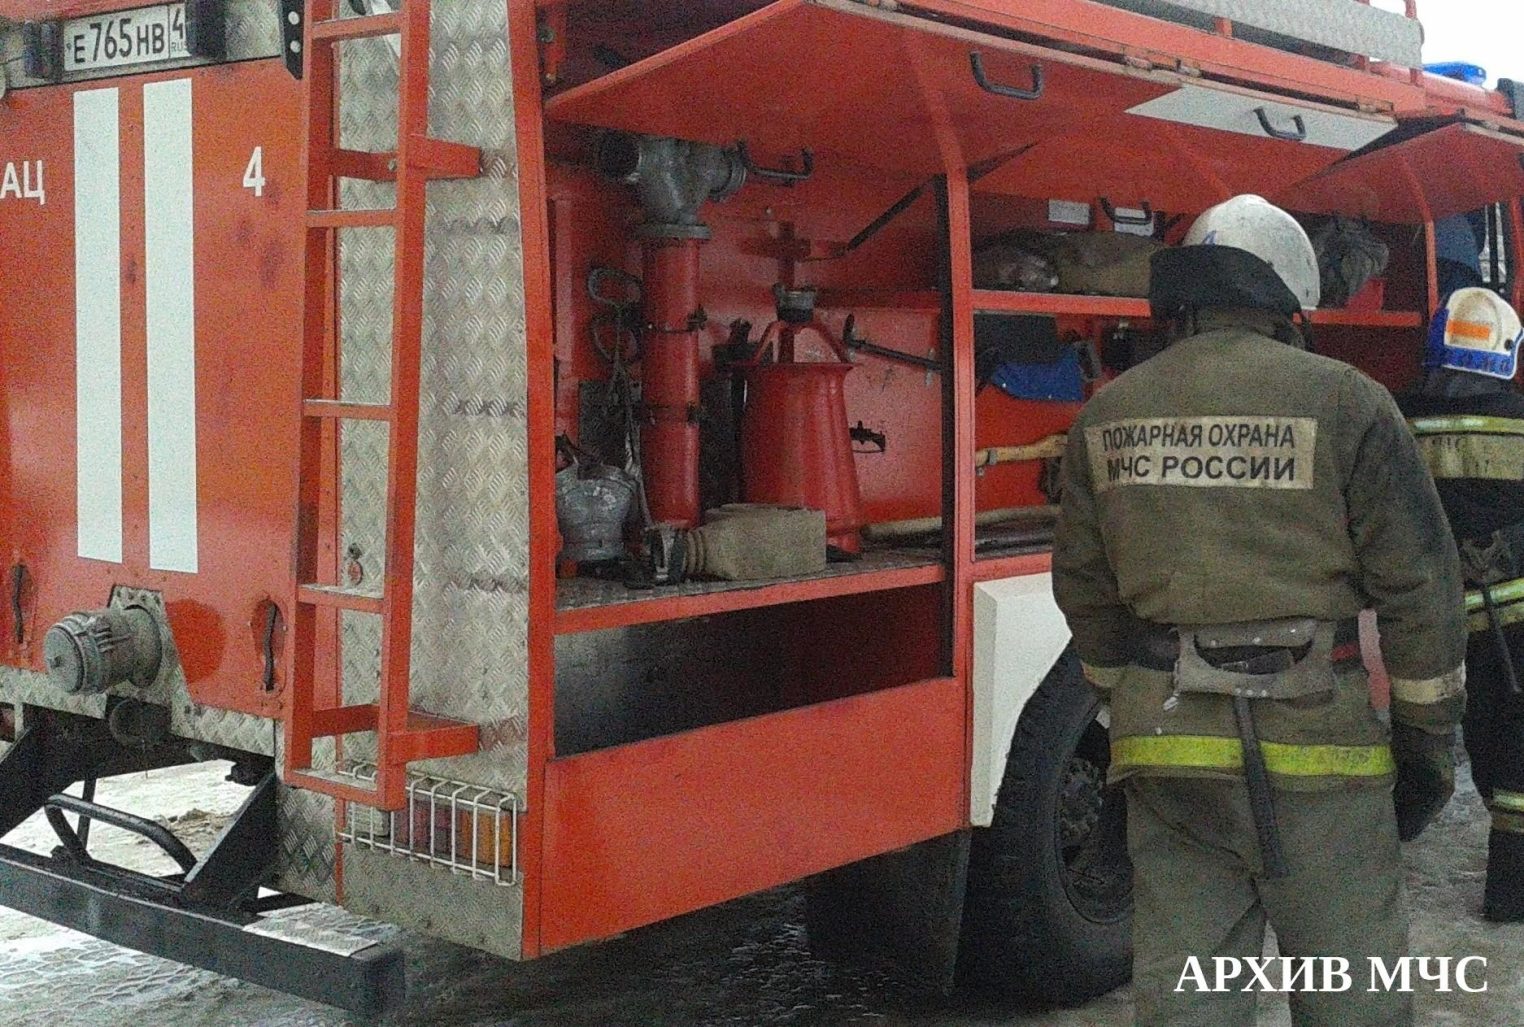 Спасатели боролись с огнем в четырех костромских районах